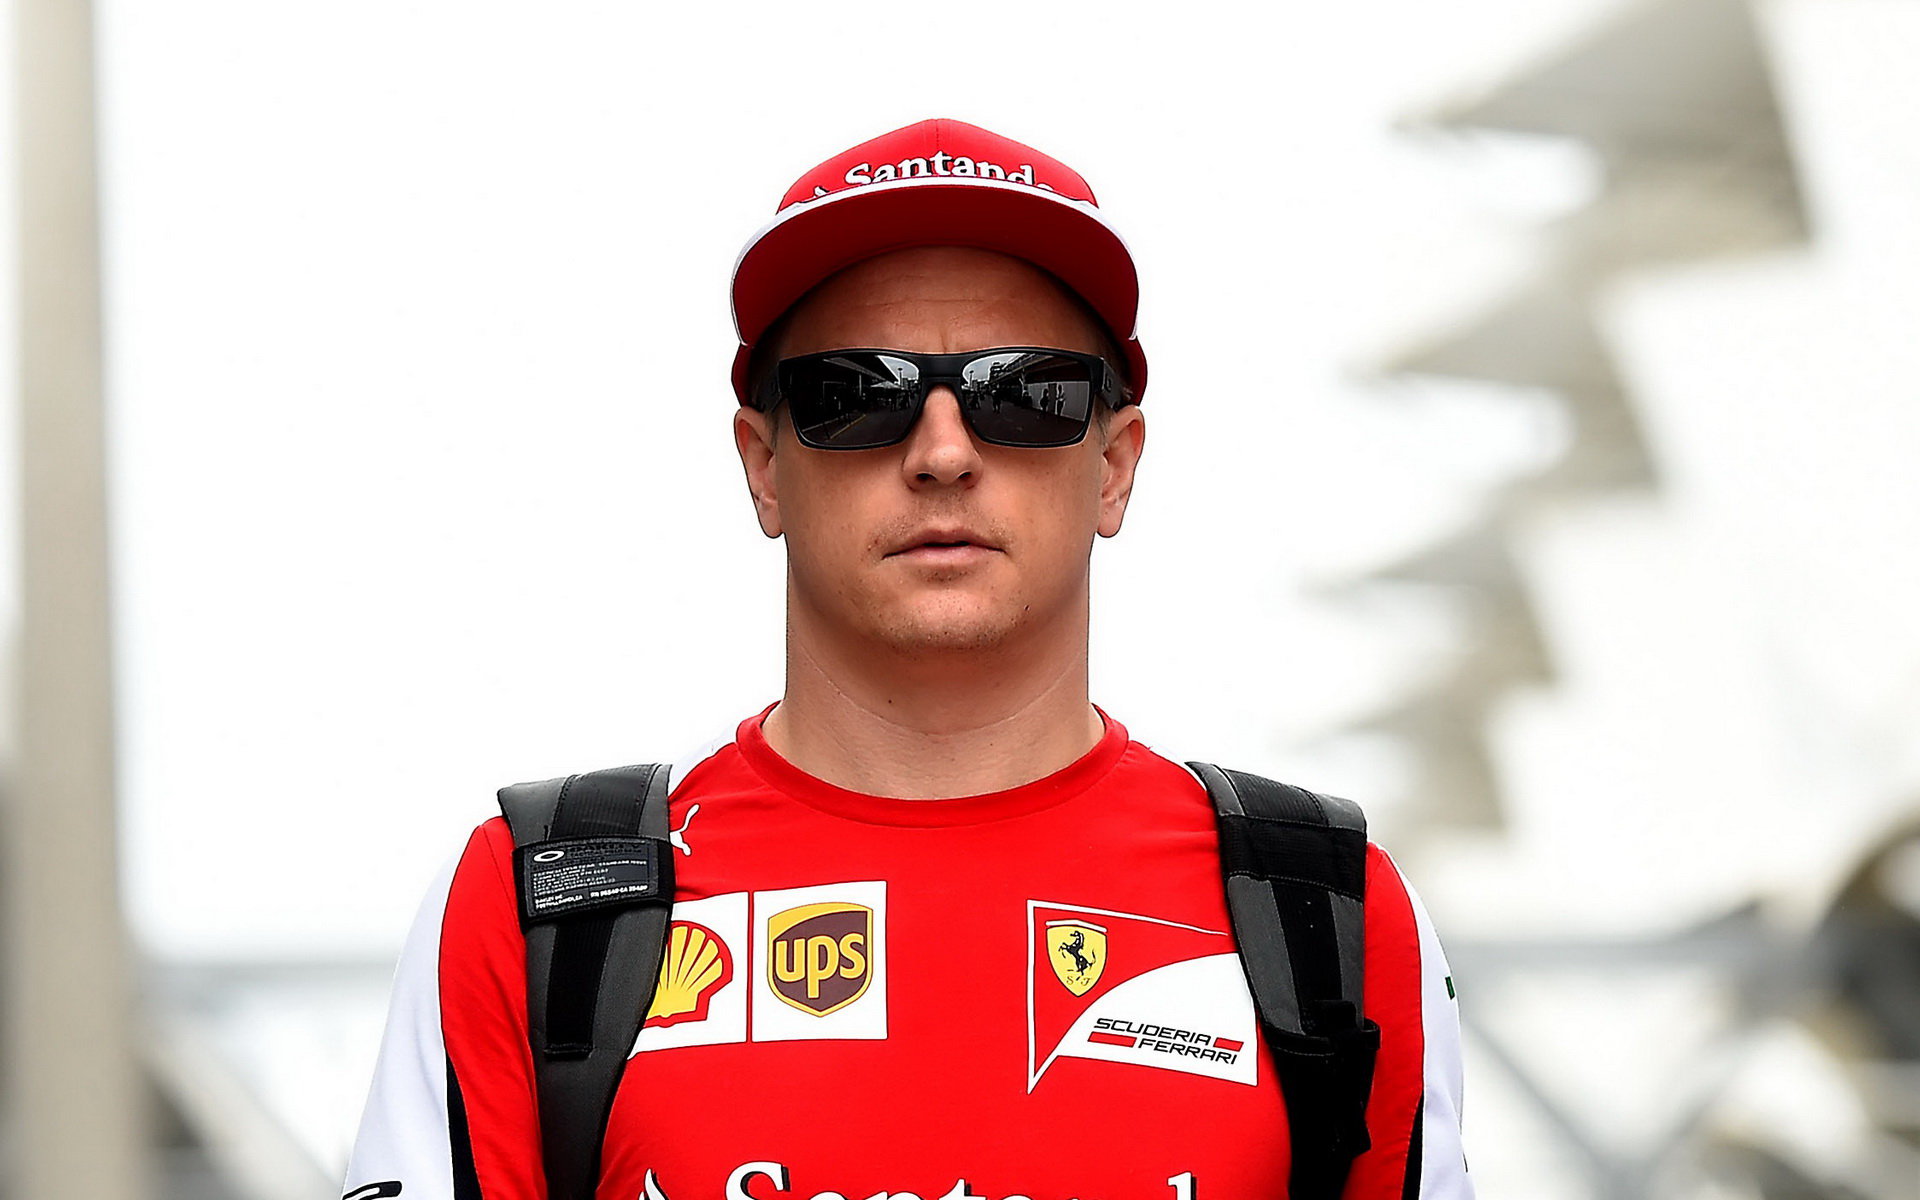 Kimi Räikkönen v Brazílii